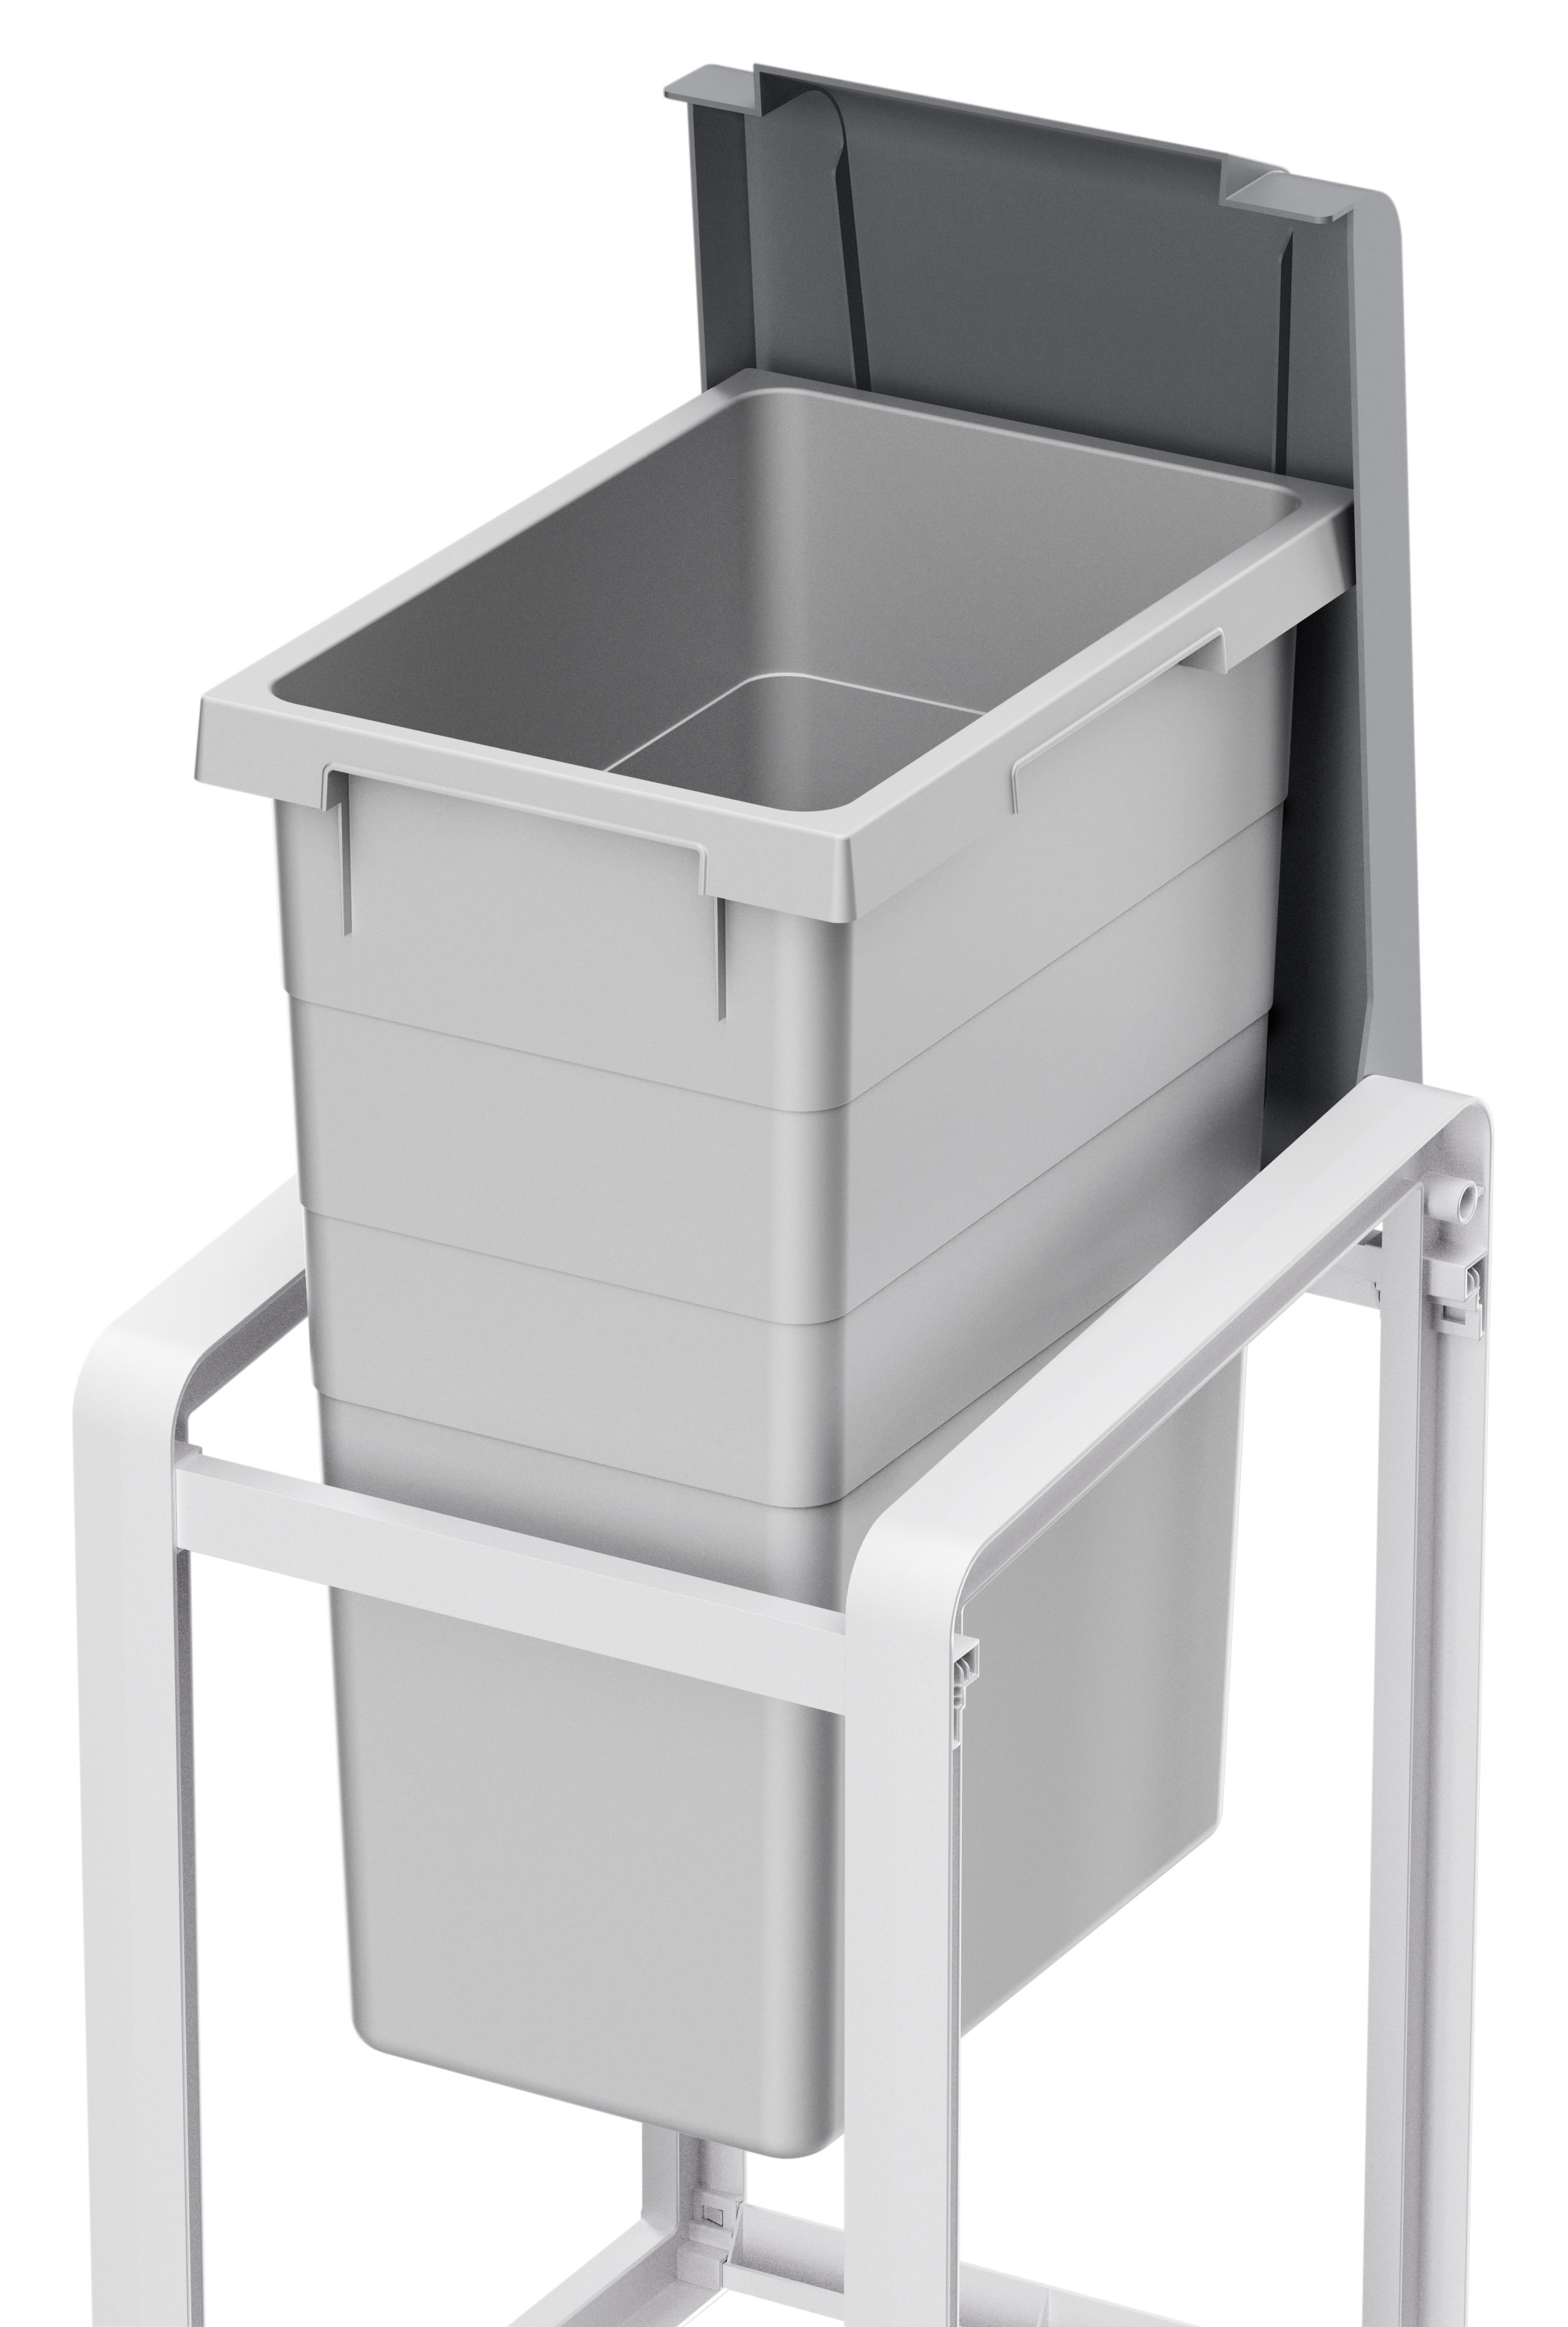 Фото товара Система раздельного хранения мусора, Hailo ProfiLine Öko XL 38 л, цвет серый,  базовый.